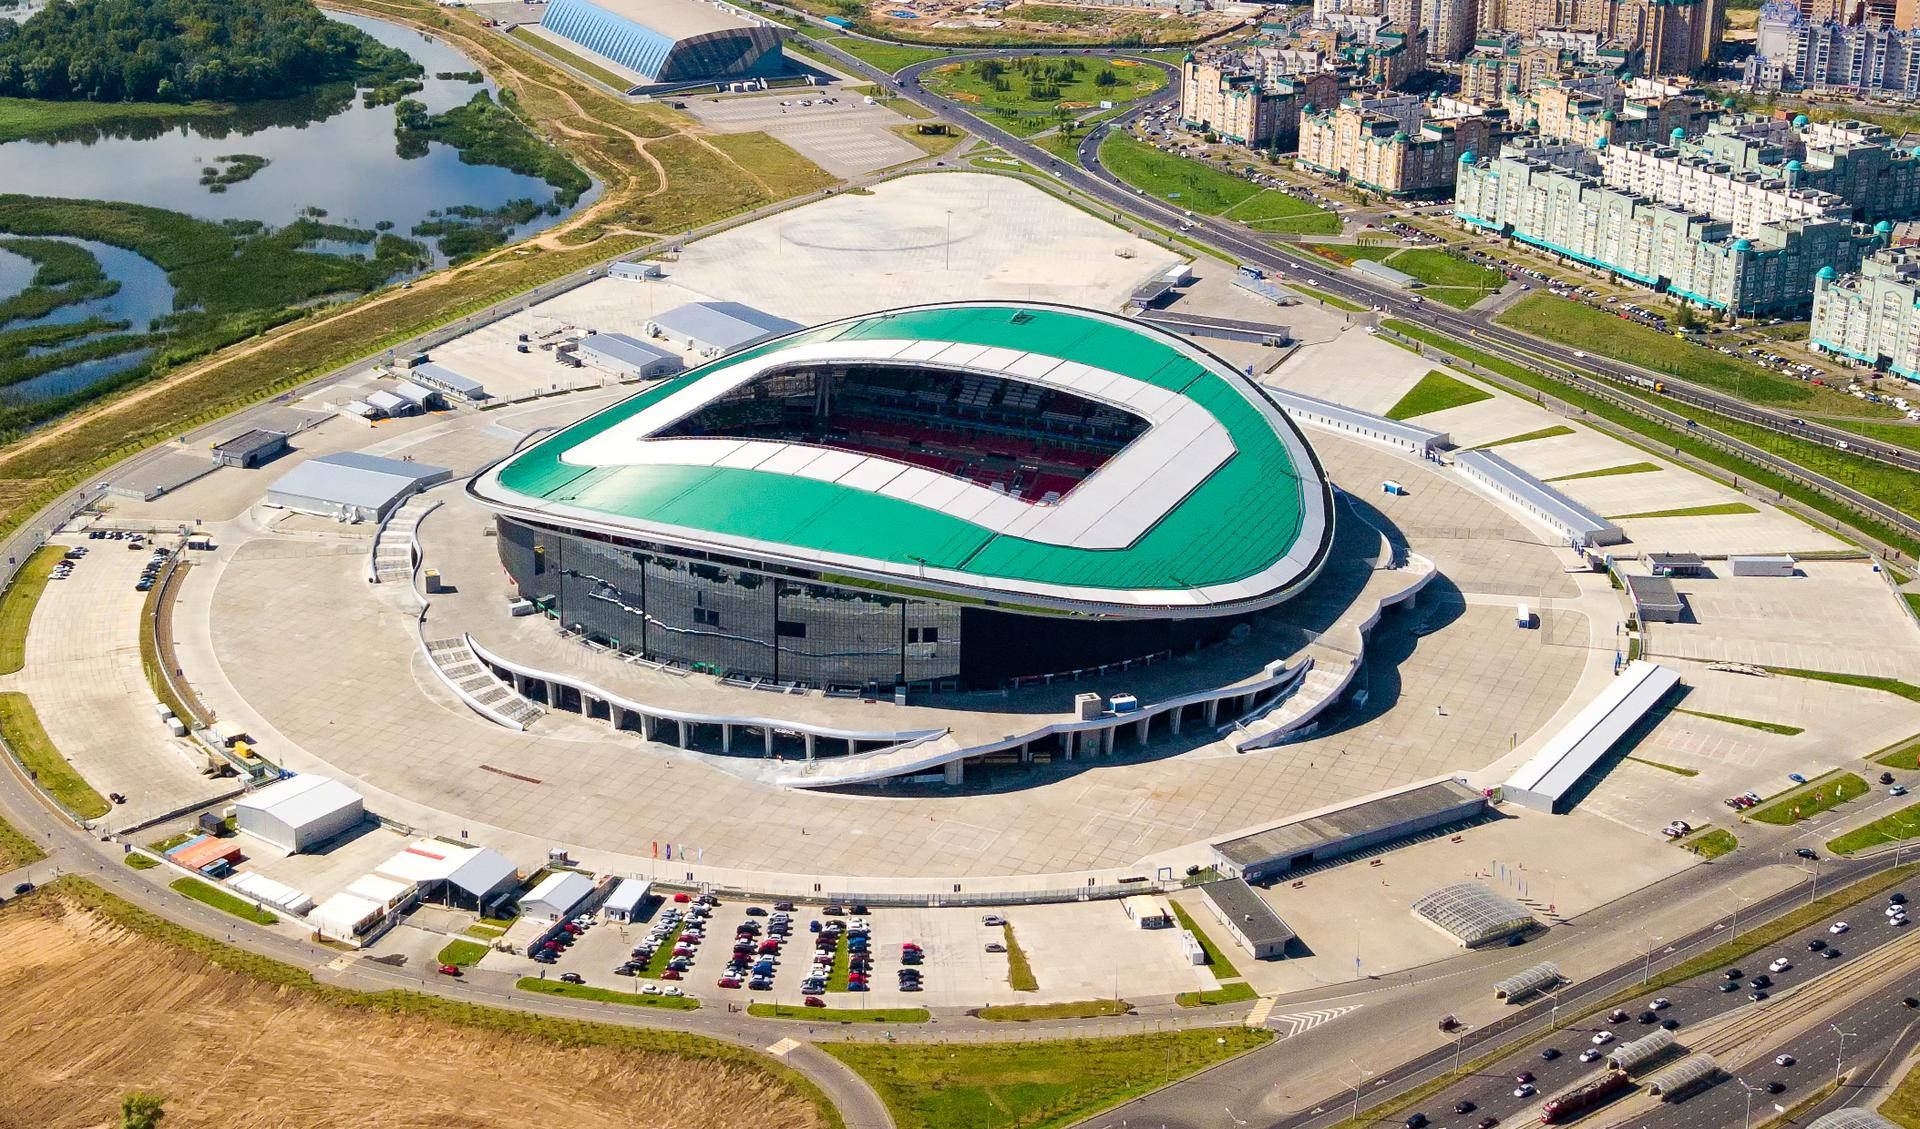 Breathtaking Aerial View Of The Kazan Arena